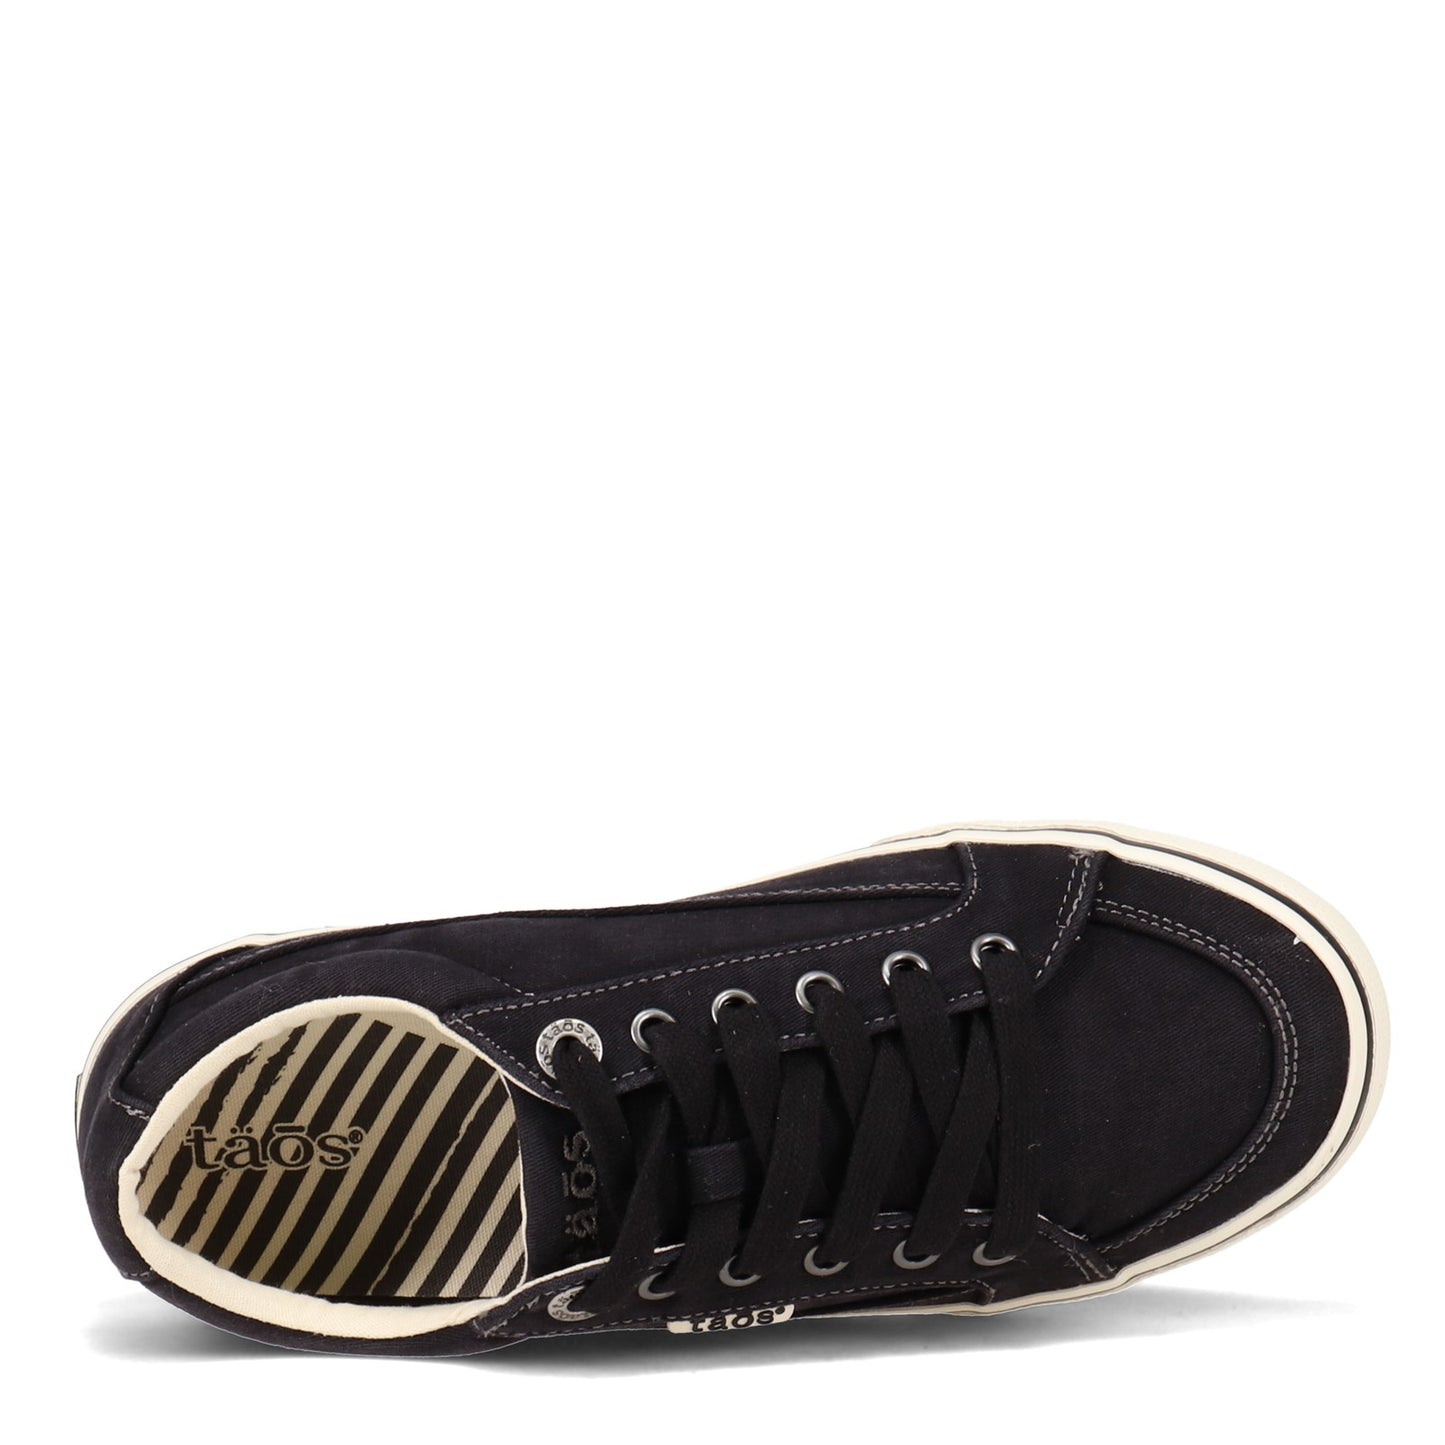 Peltz Shoes  Women's Taos Moc Star Sneaker BLACK MST-13482A-BLKD